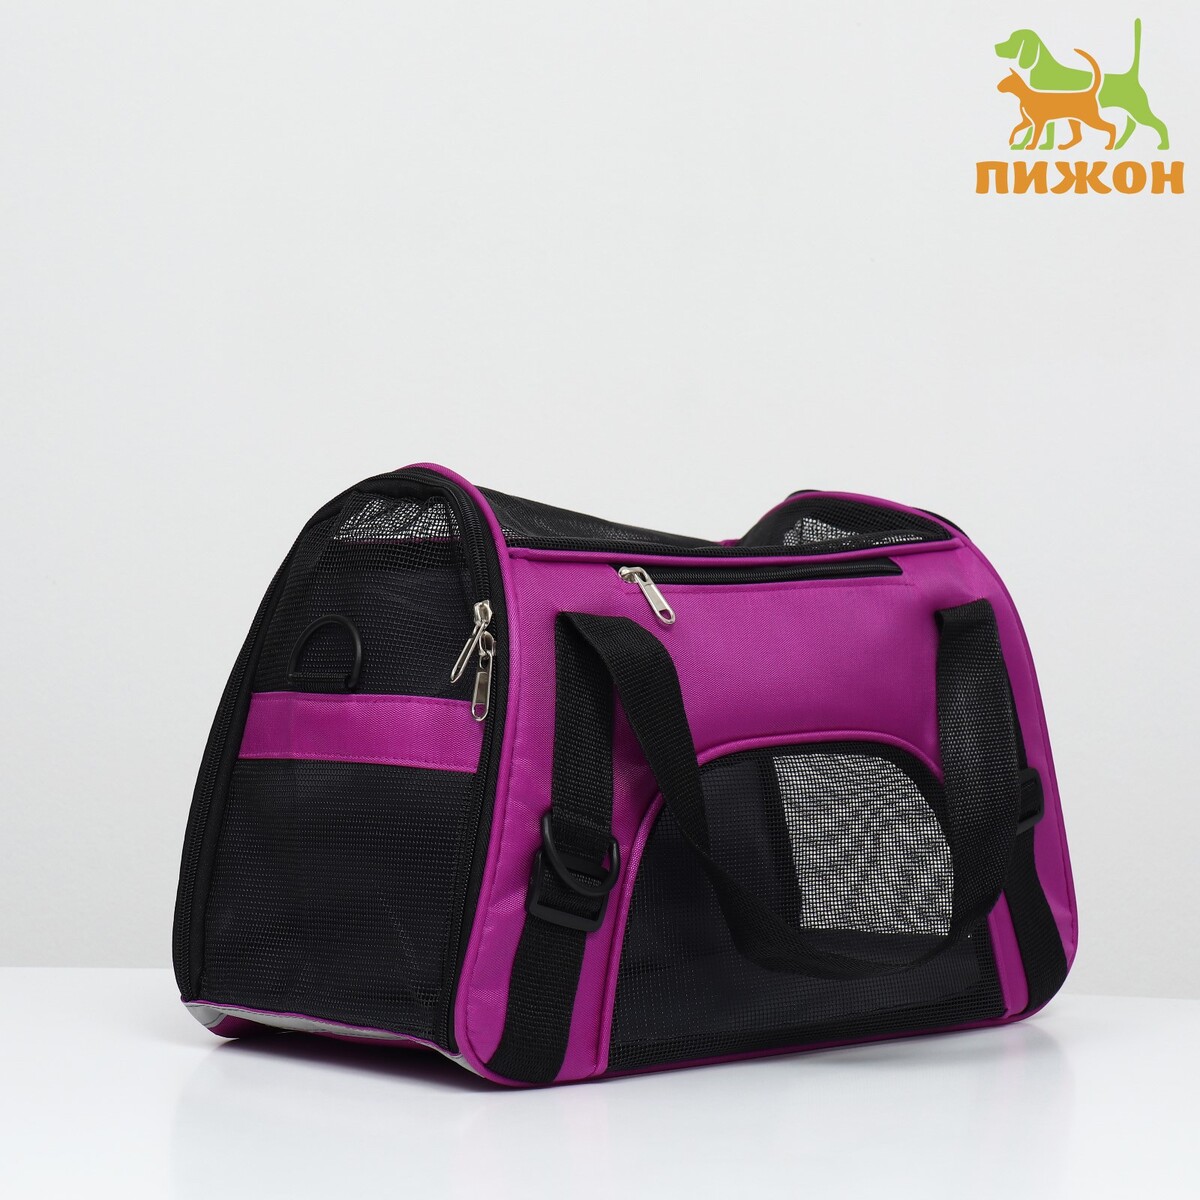 Сумка-переноска сетчатая, 43 х 21 х 30 см, фиолетовая сумка переноска для животных оксфорд 42 х 22 х 29 см фиолетовая